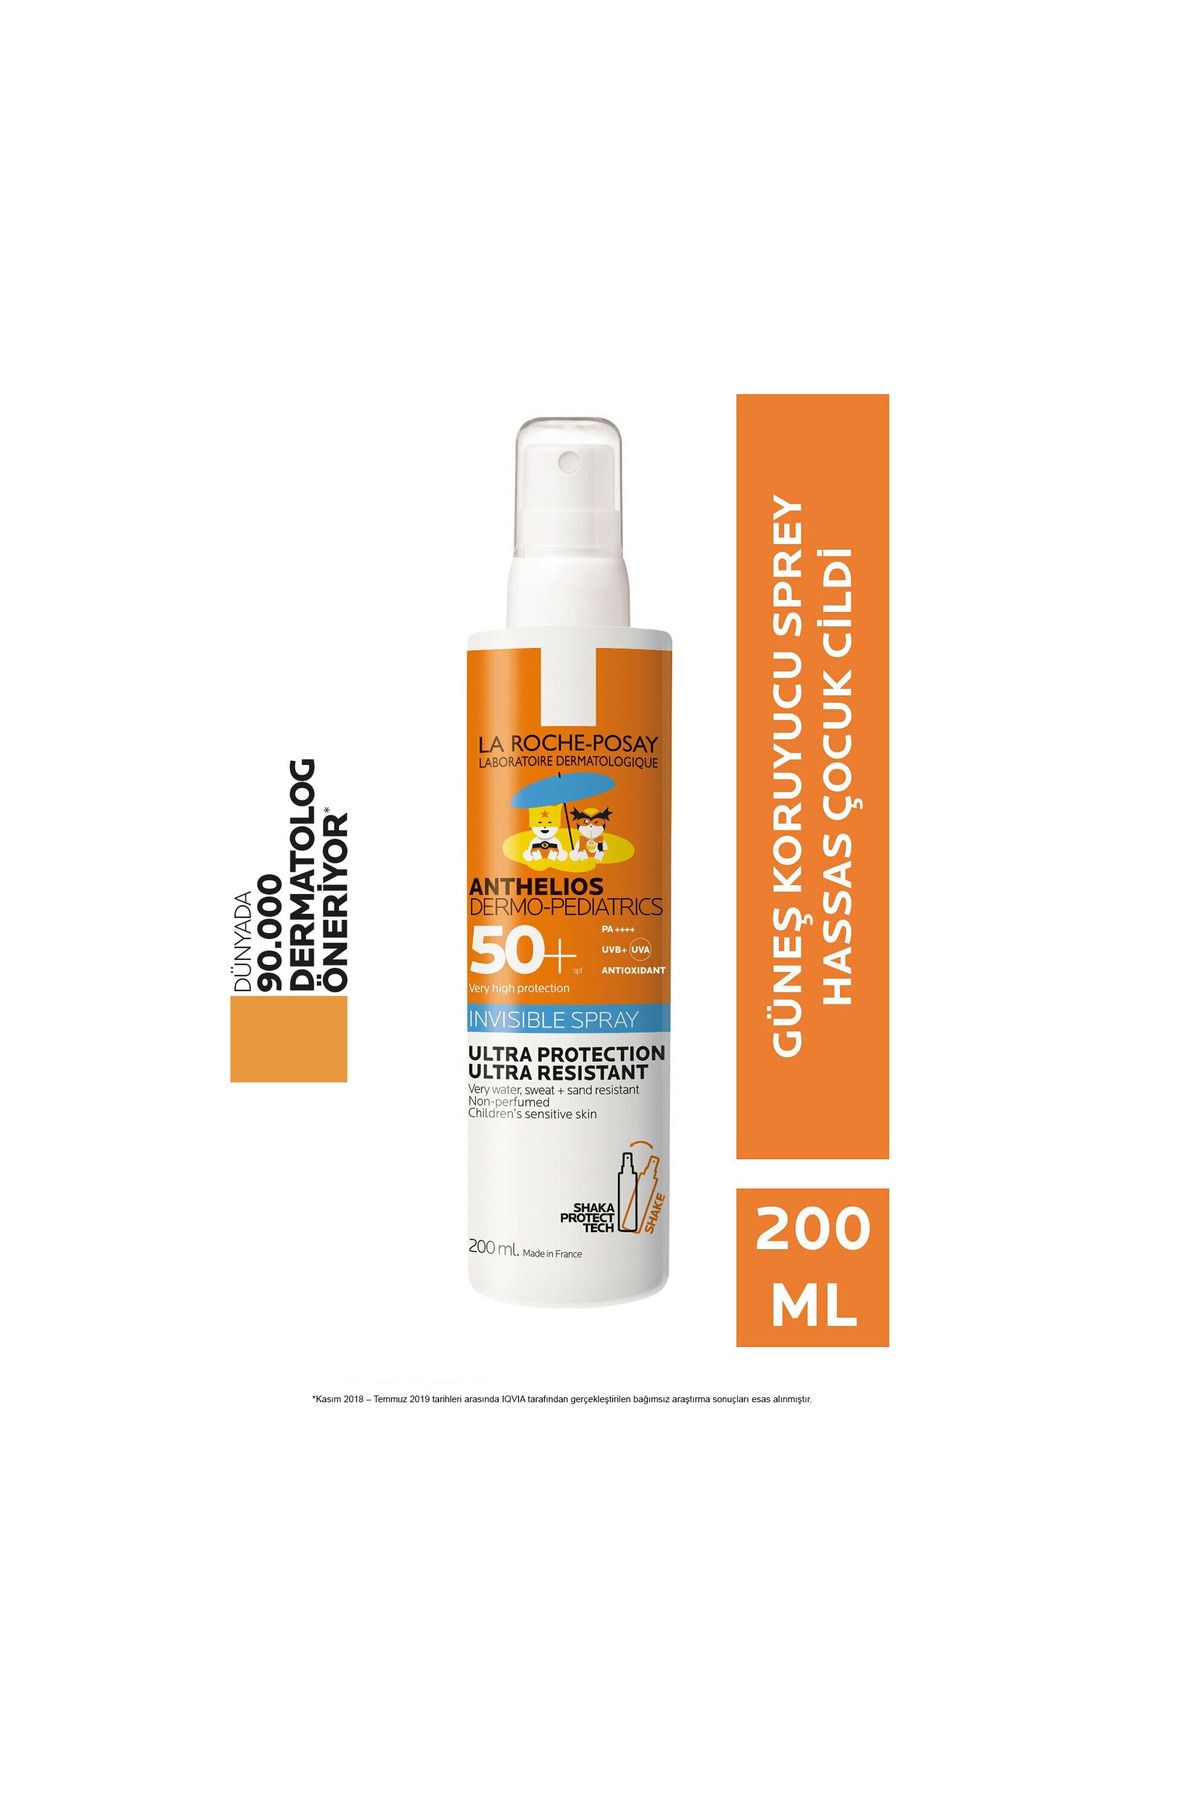 La Roche Posay Çocuklar için hassas cilde özel kızılötesi, yatıştırıcı yüksek güneş koruması 200ml